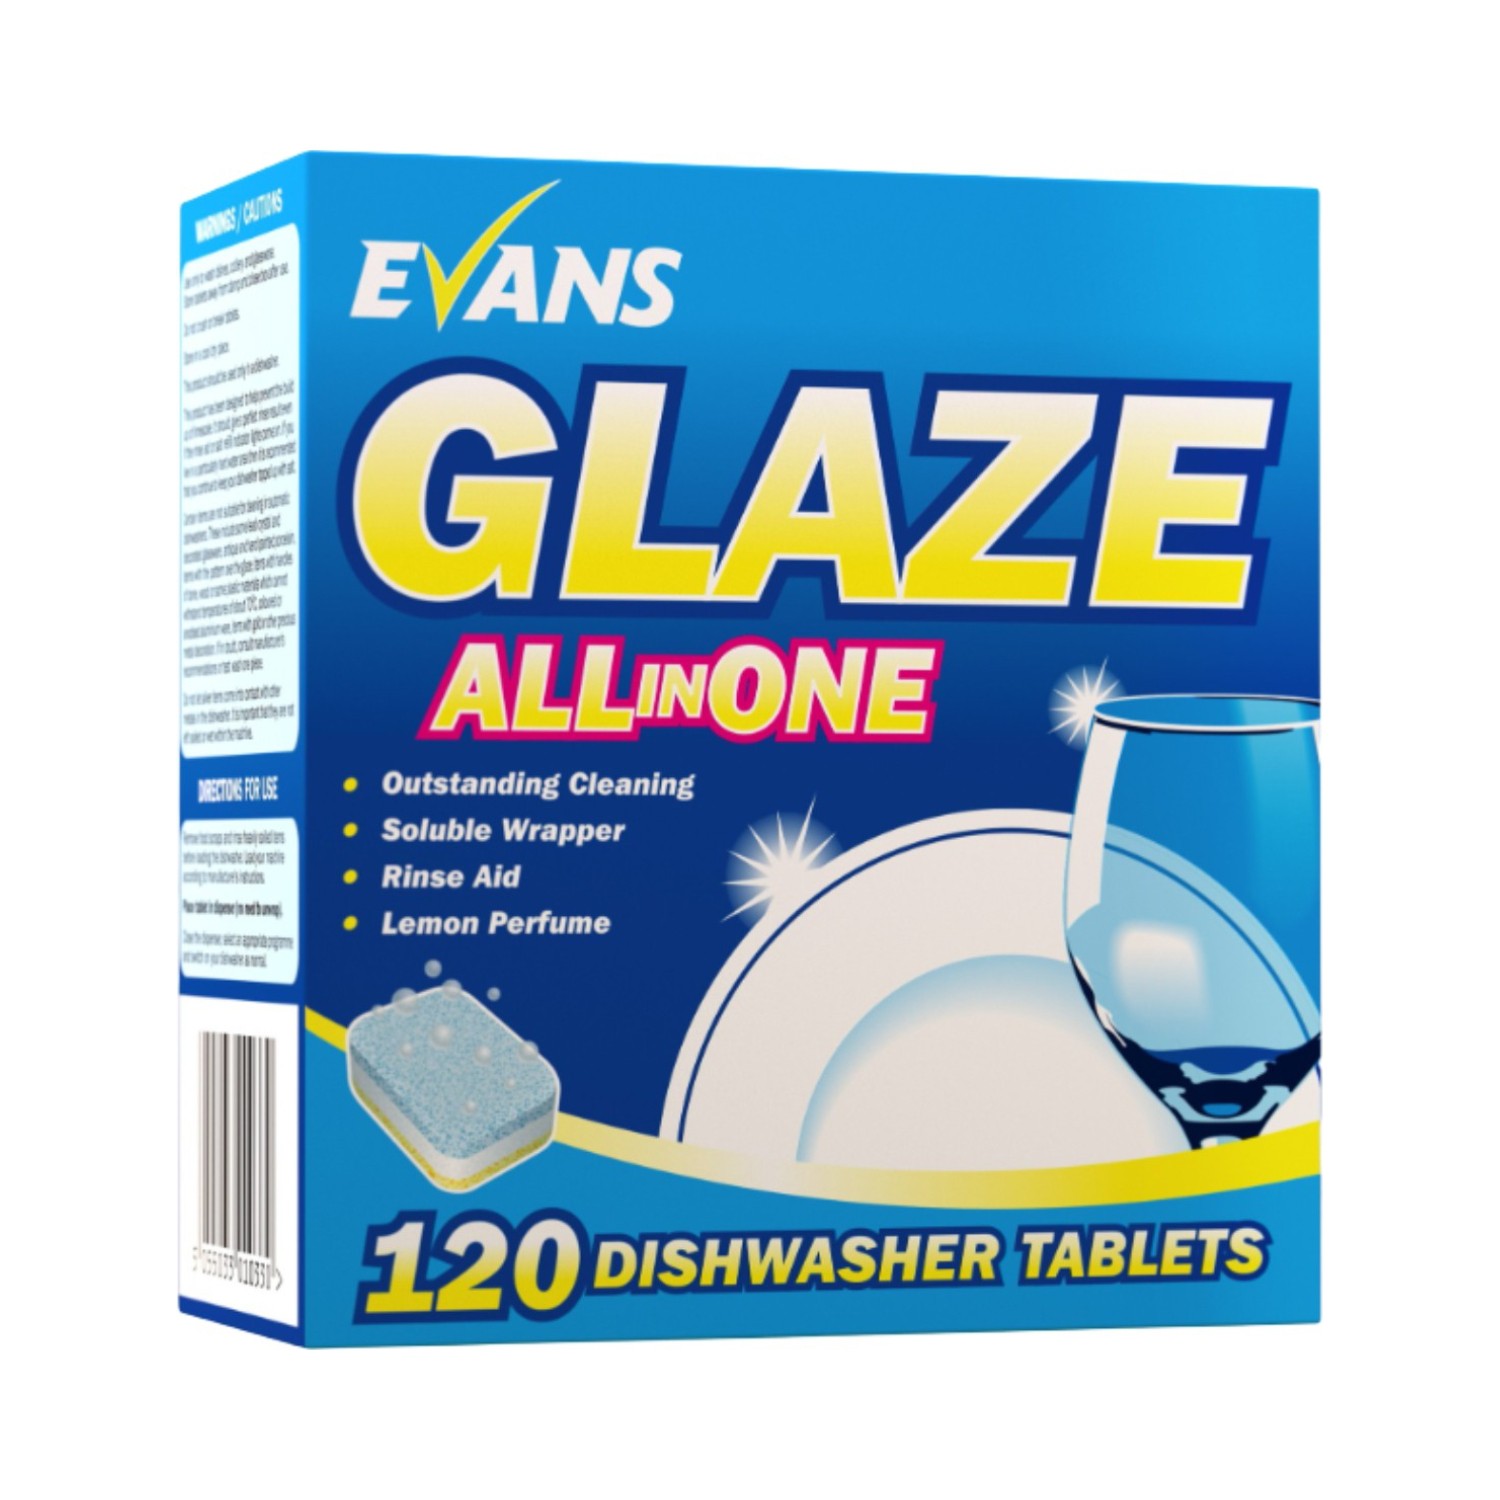 Evans+Glaze+All+In+One+Dishwasher+Tablets